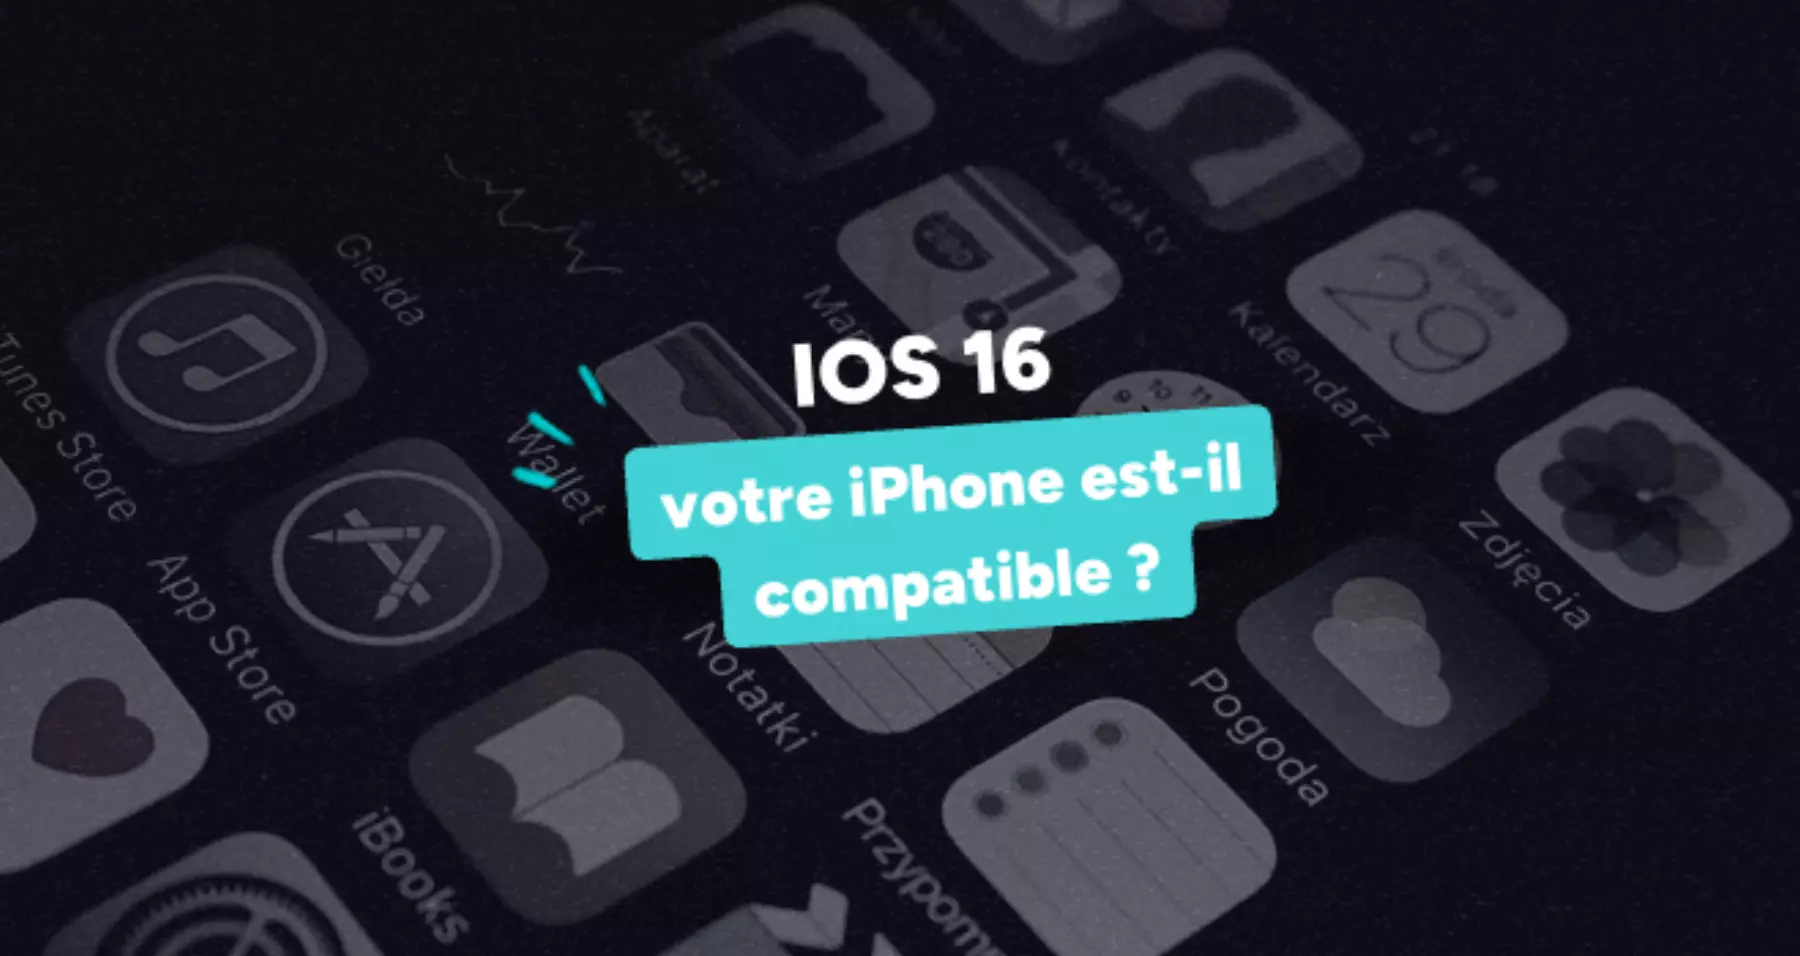 IOS 10 peut-il être installé sur iPhone 4s ou iPhone 5